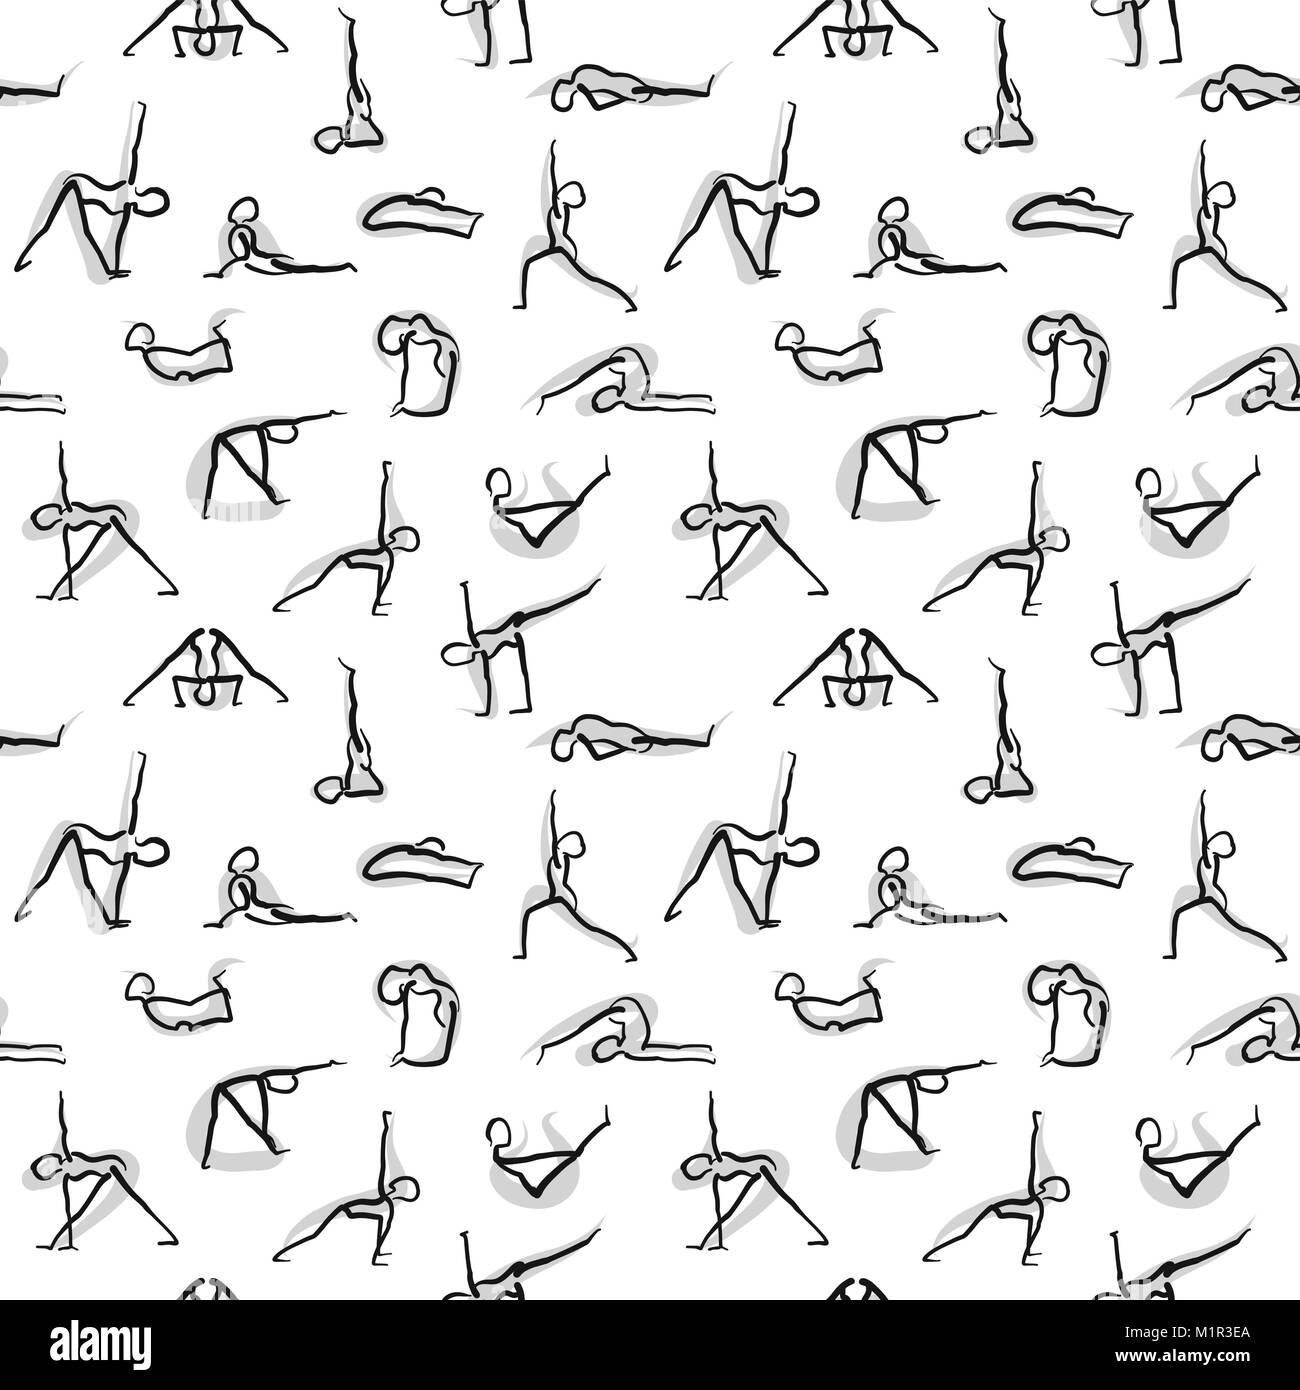 Yoga icons Wallpaper Design, Hand gezeichnet nahtlose Muster auf weißem Hintergrund. Vektorgrafiken Skizze. Stock Vektor